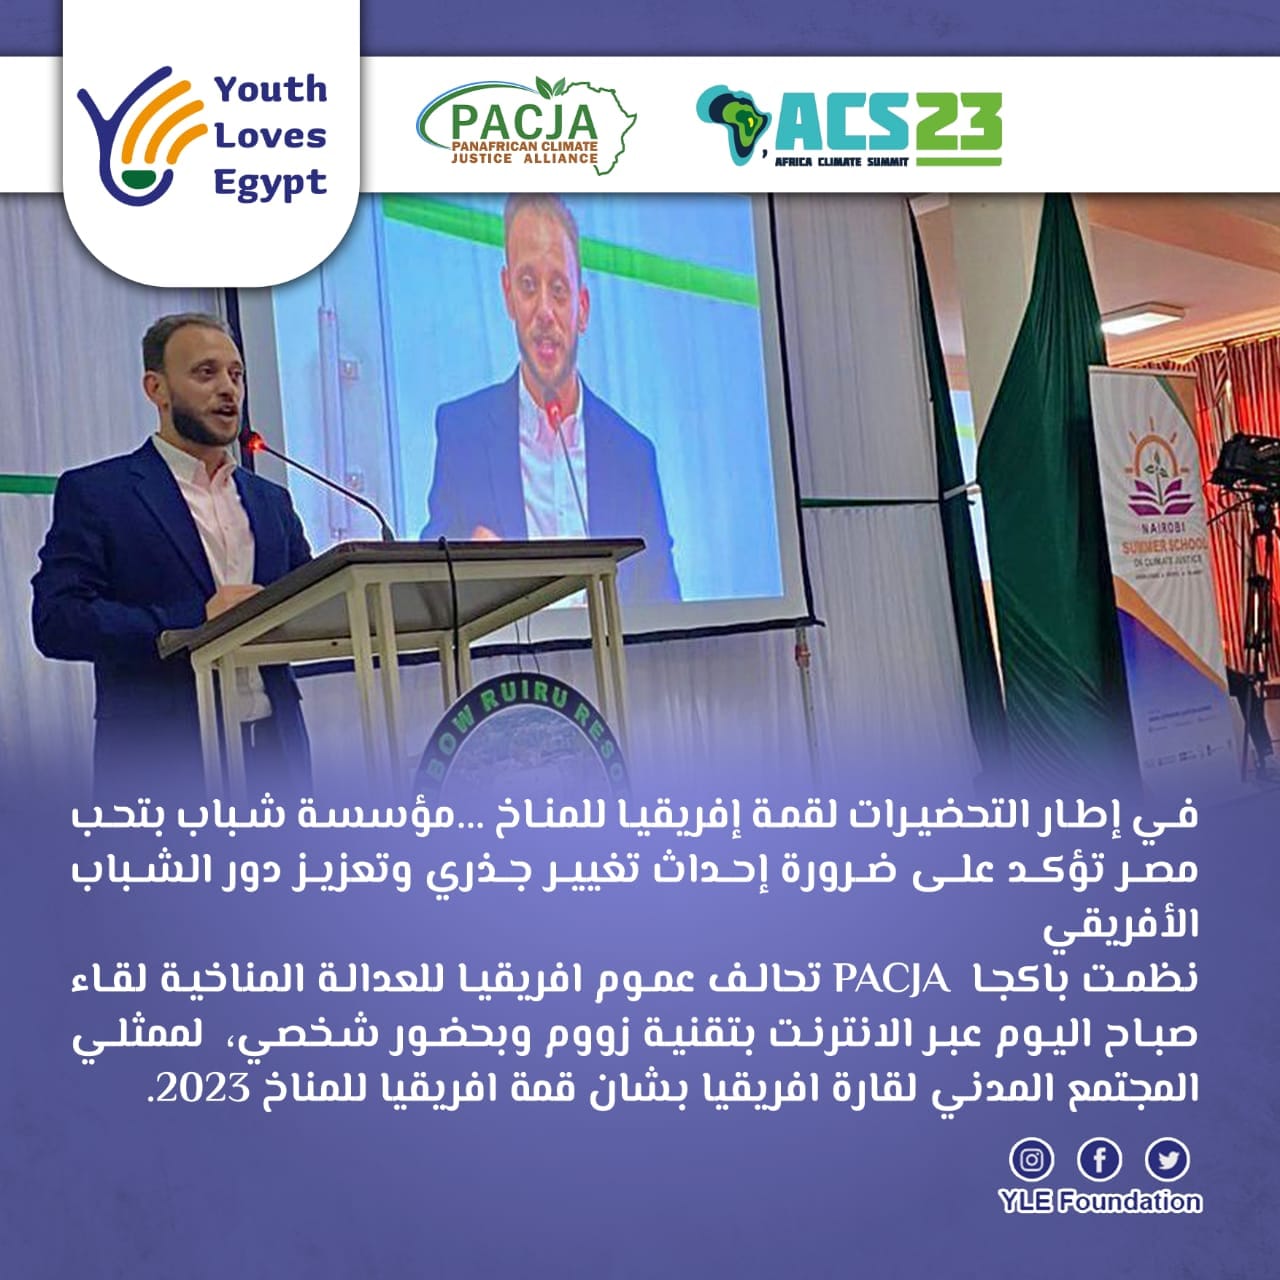 مؤسسة شباب بتحب مصر تؤكد على ضرورة إحداث تغيير جذري وتعزيز دور الشباب الأفريقي